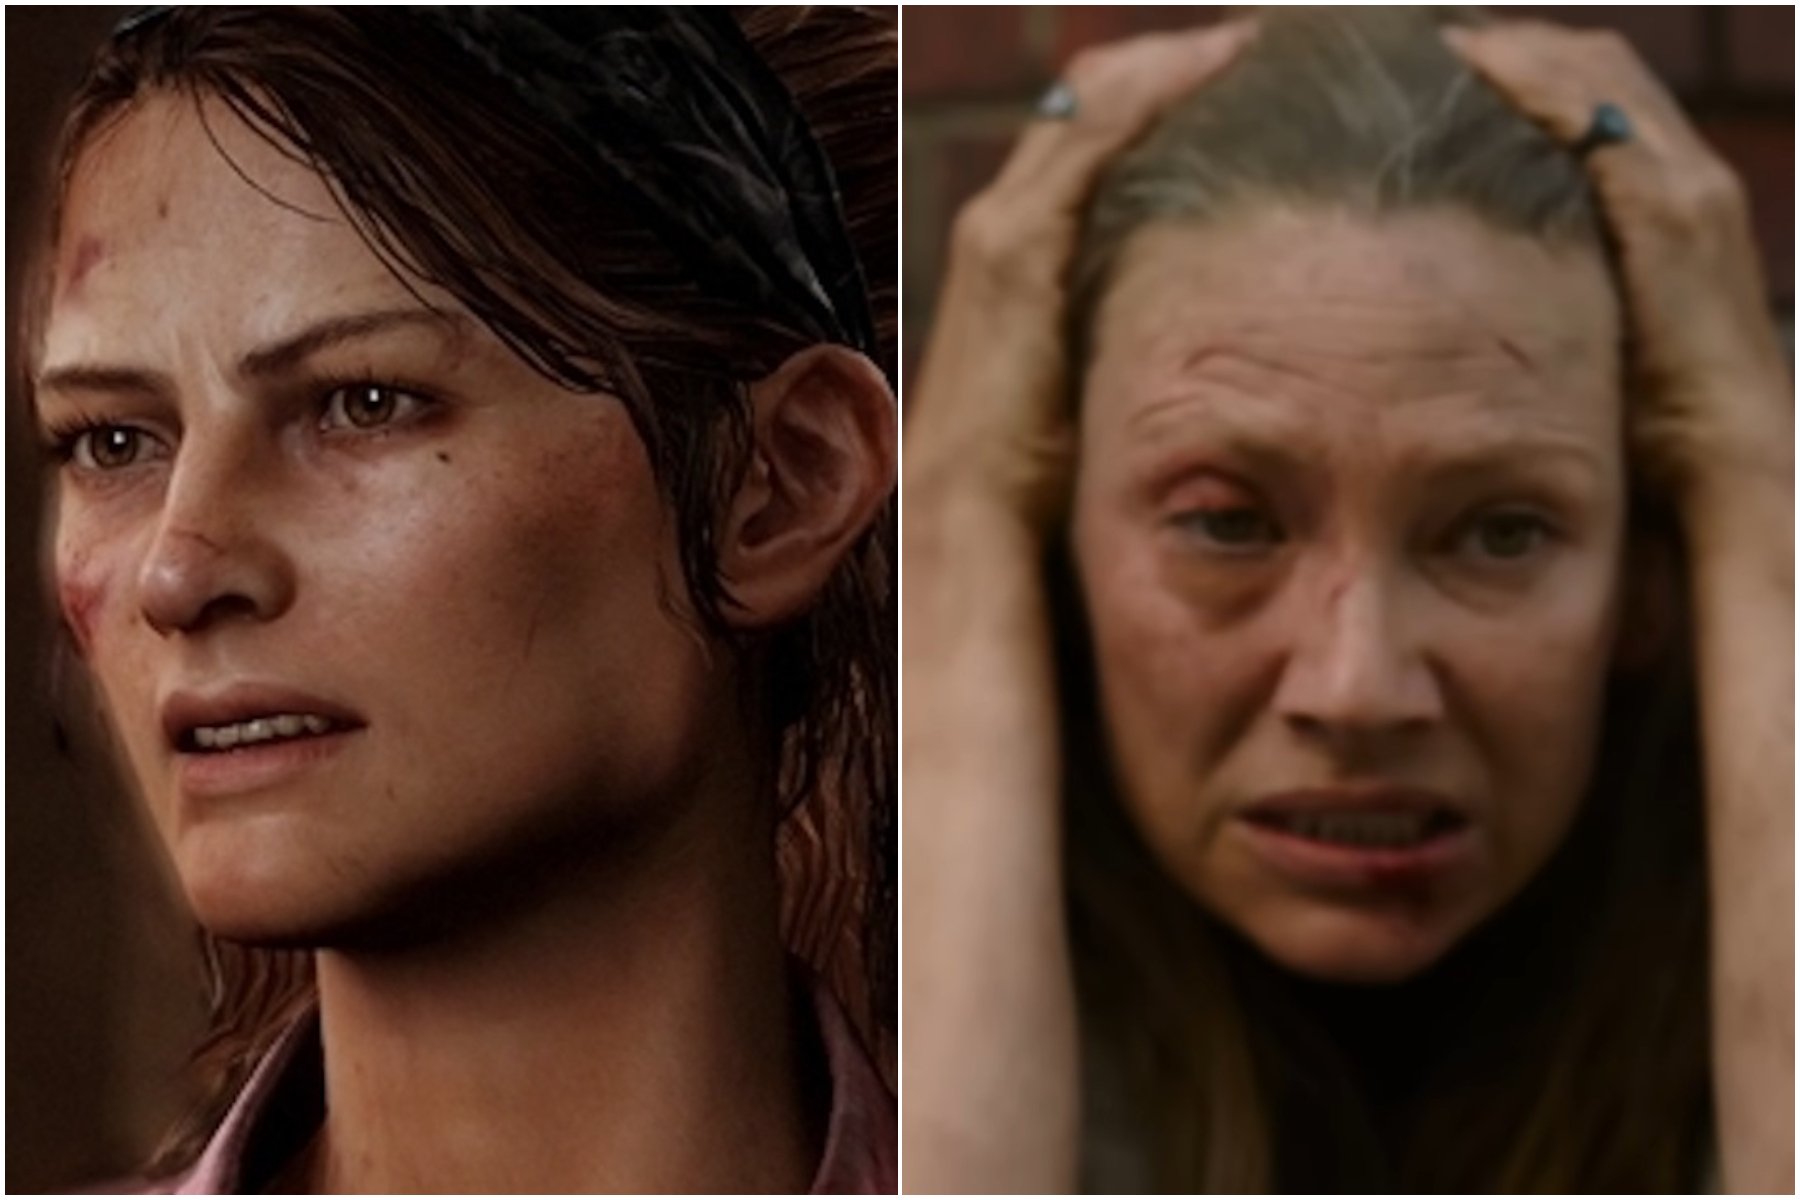 The Last of Us HBO: Atriz preferida por muitos fãs diz que adoraria viver  Ellie na série - Combo Infinito